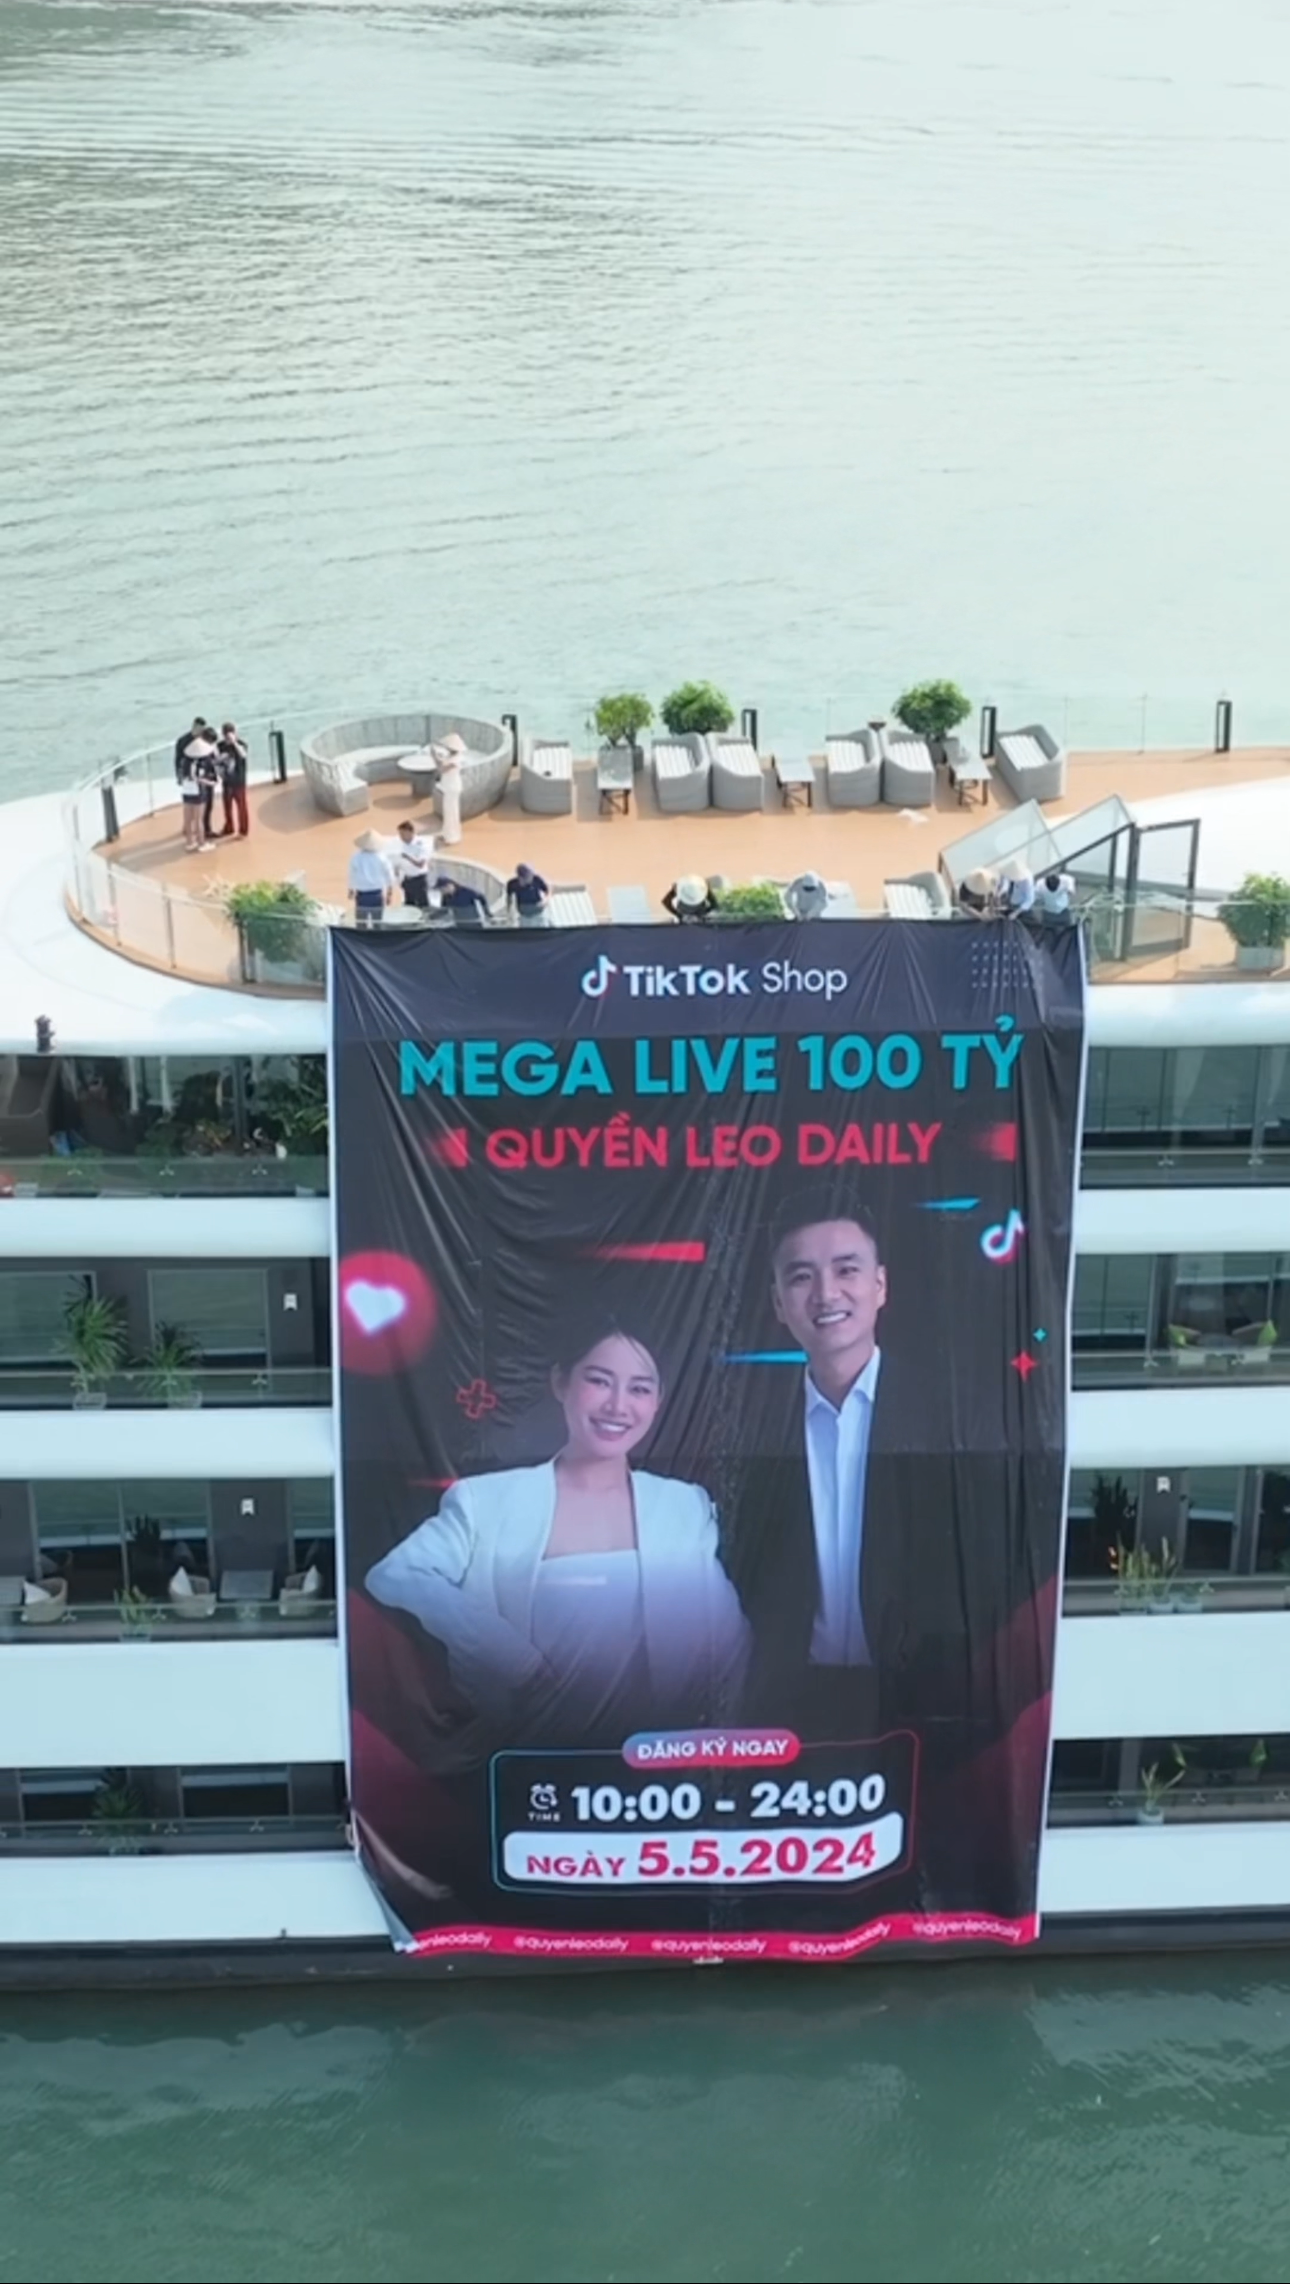 Chủ 1 kênh TikTok công bố phiên livestream phá vỡ kỷ lục Đông Nam Á: Nhận tài trợ 1 triệu đô, doanh thu kỳ vọng đạt 100 tỷ đồng, thuê hẳn du thuyền 5 sao để làm chiến dịch- Ảnh 2.